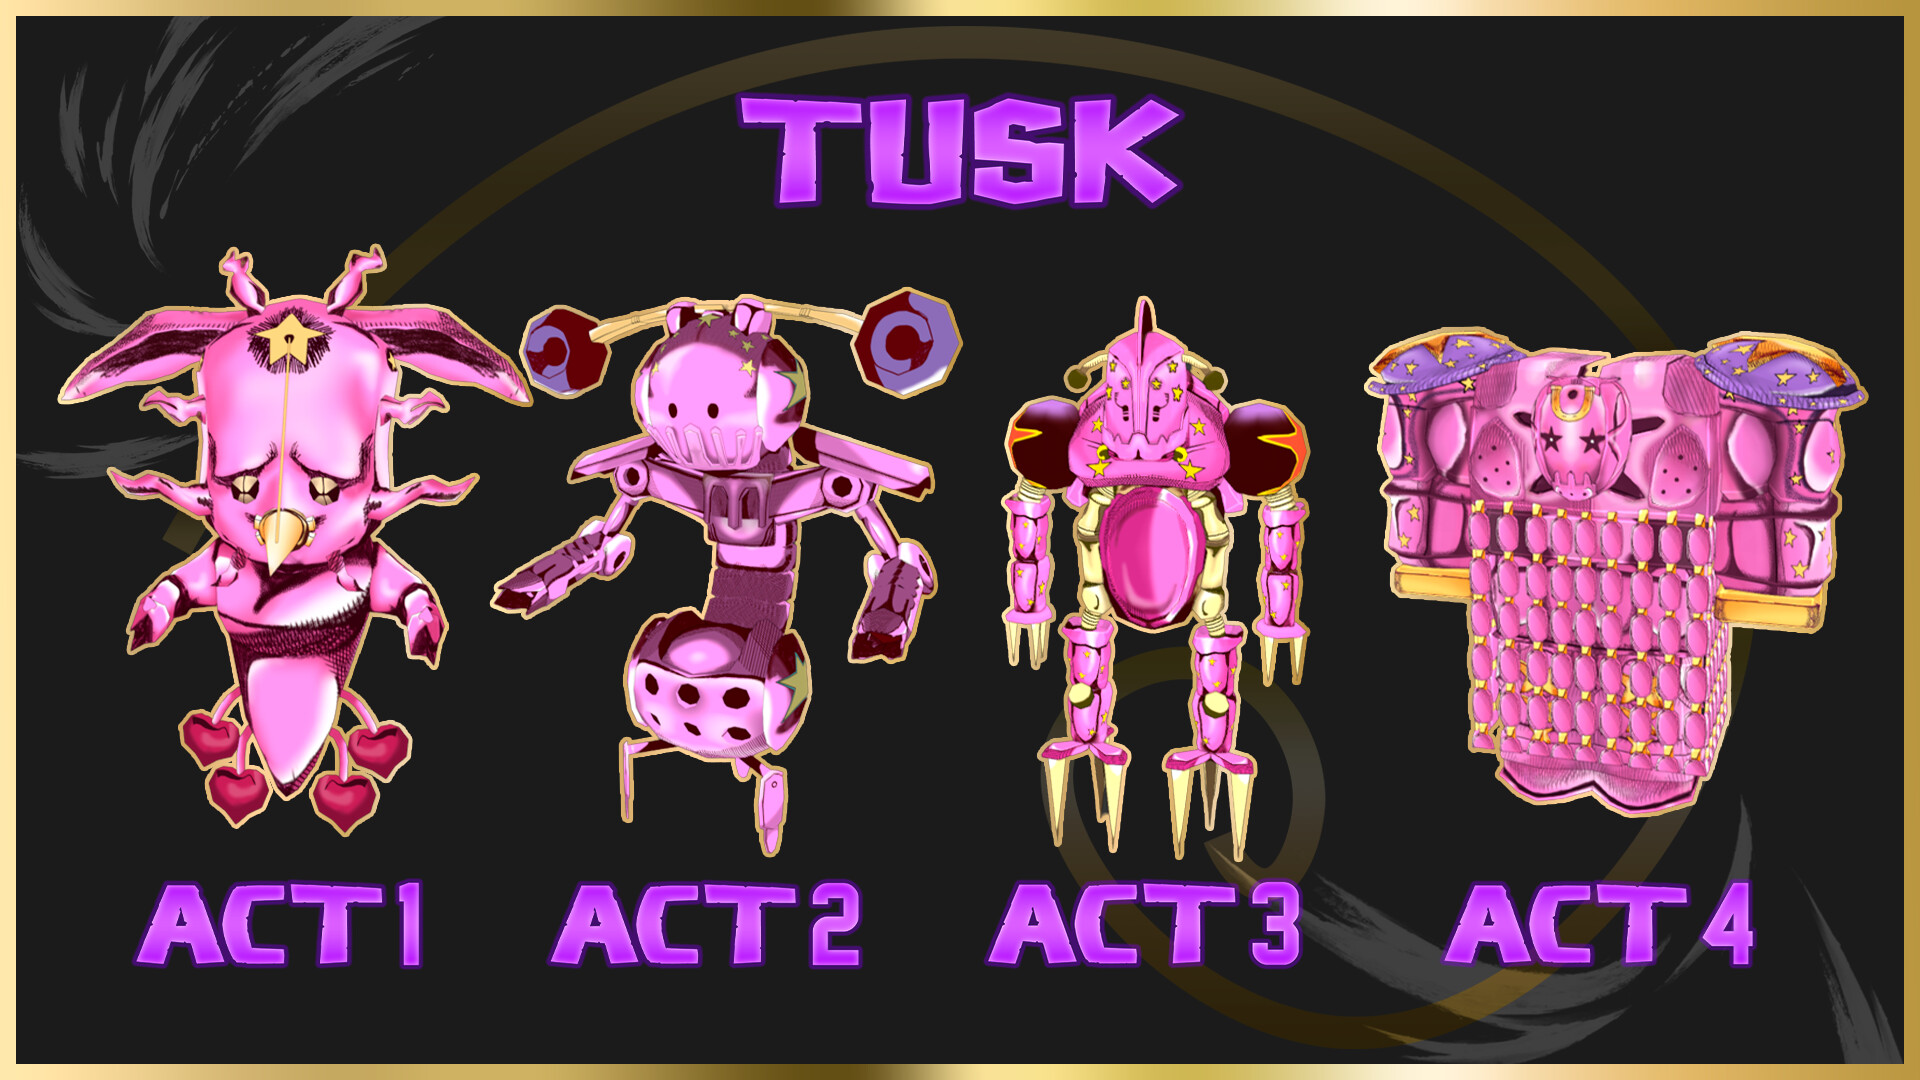 ArtStation - Tusk ACT 4